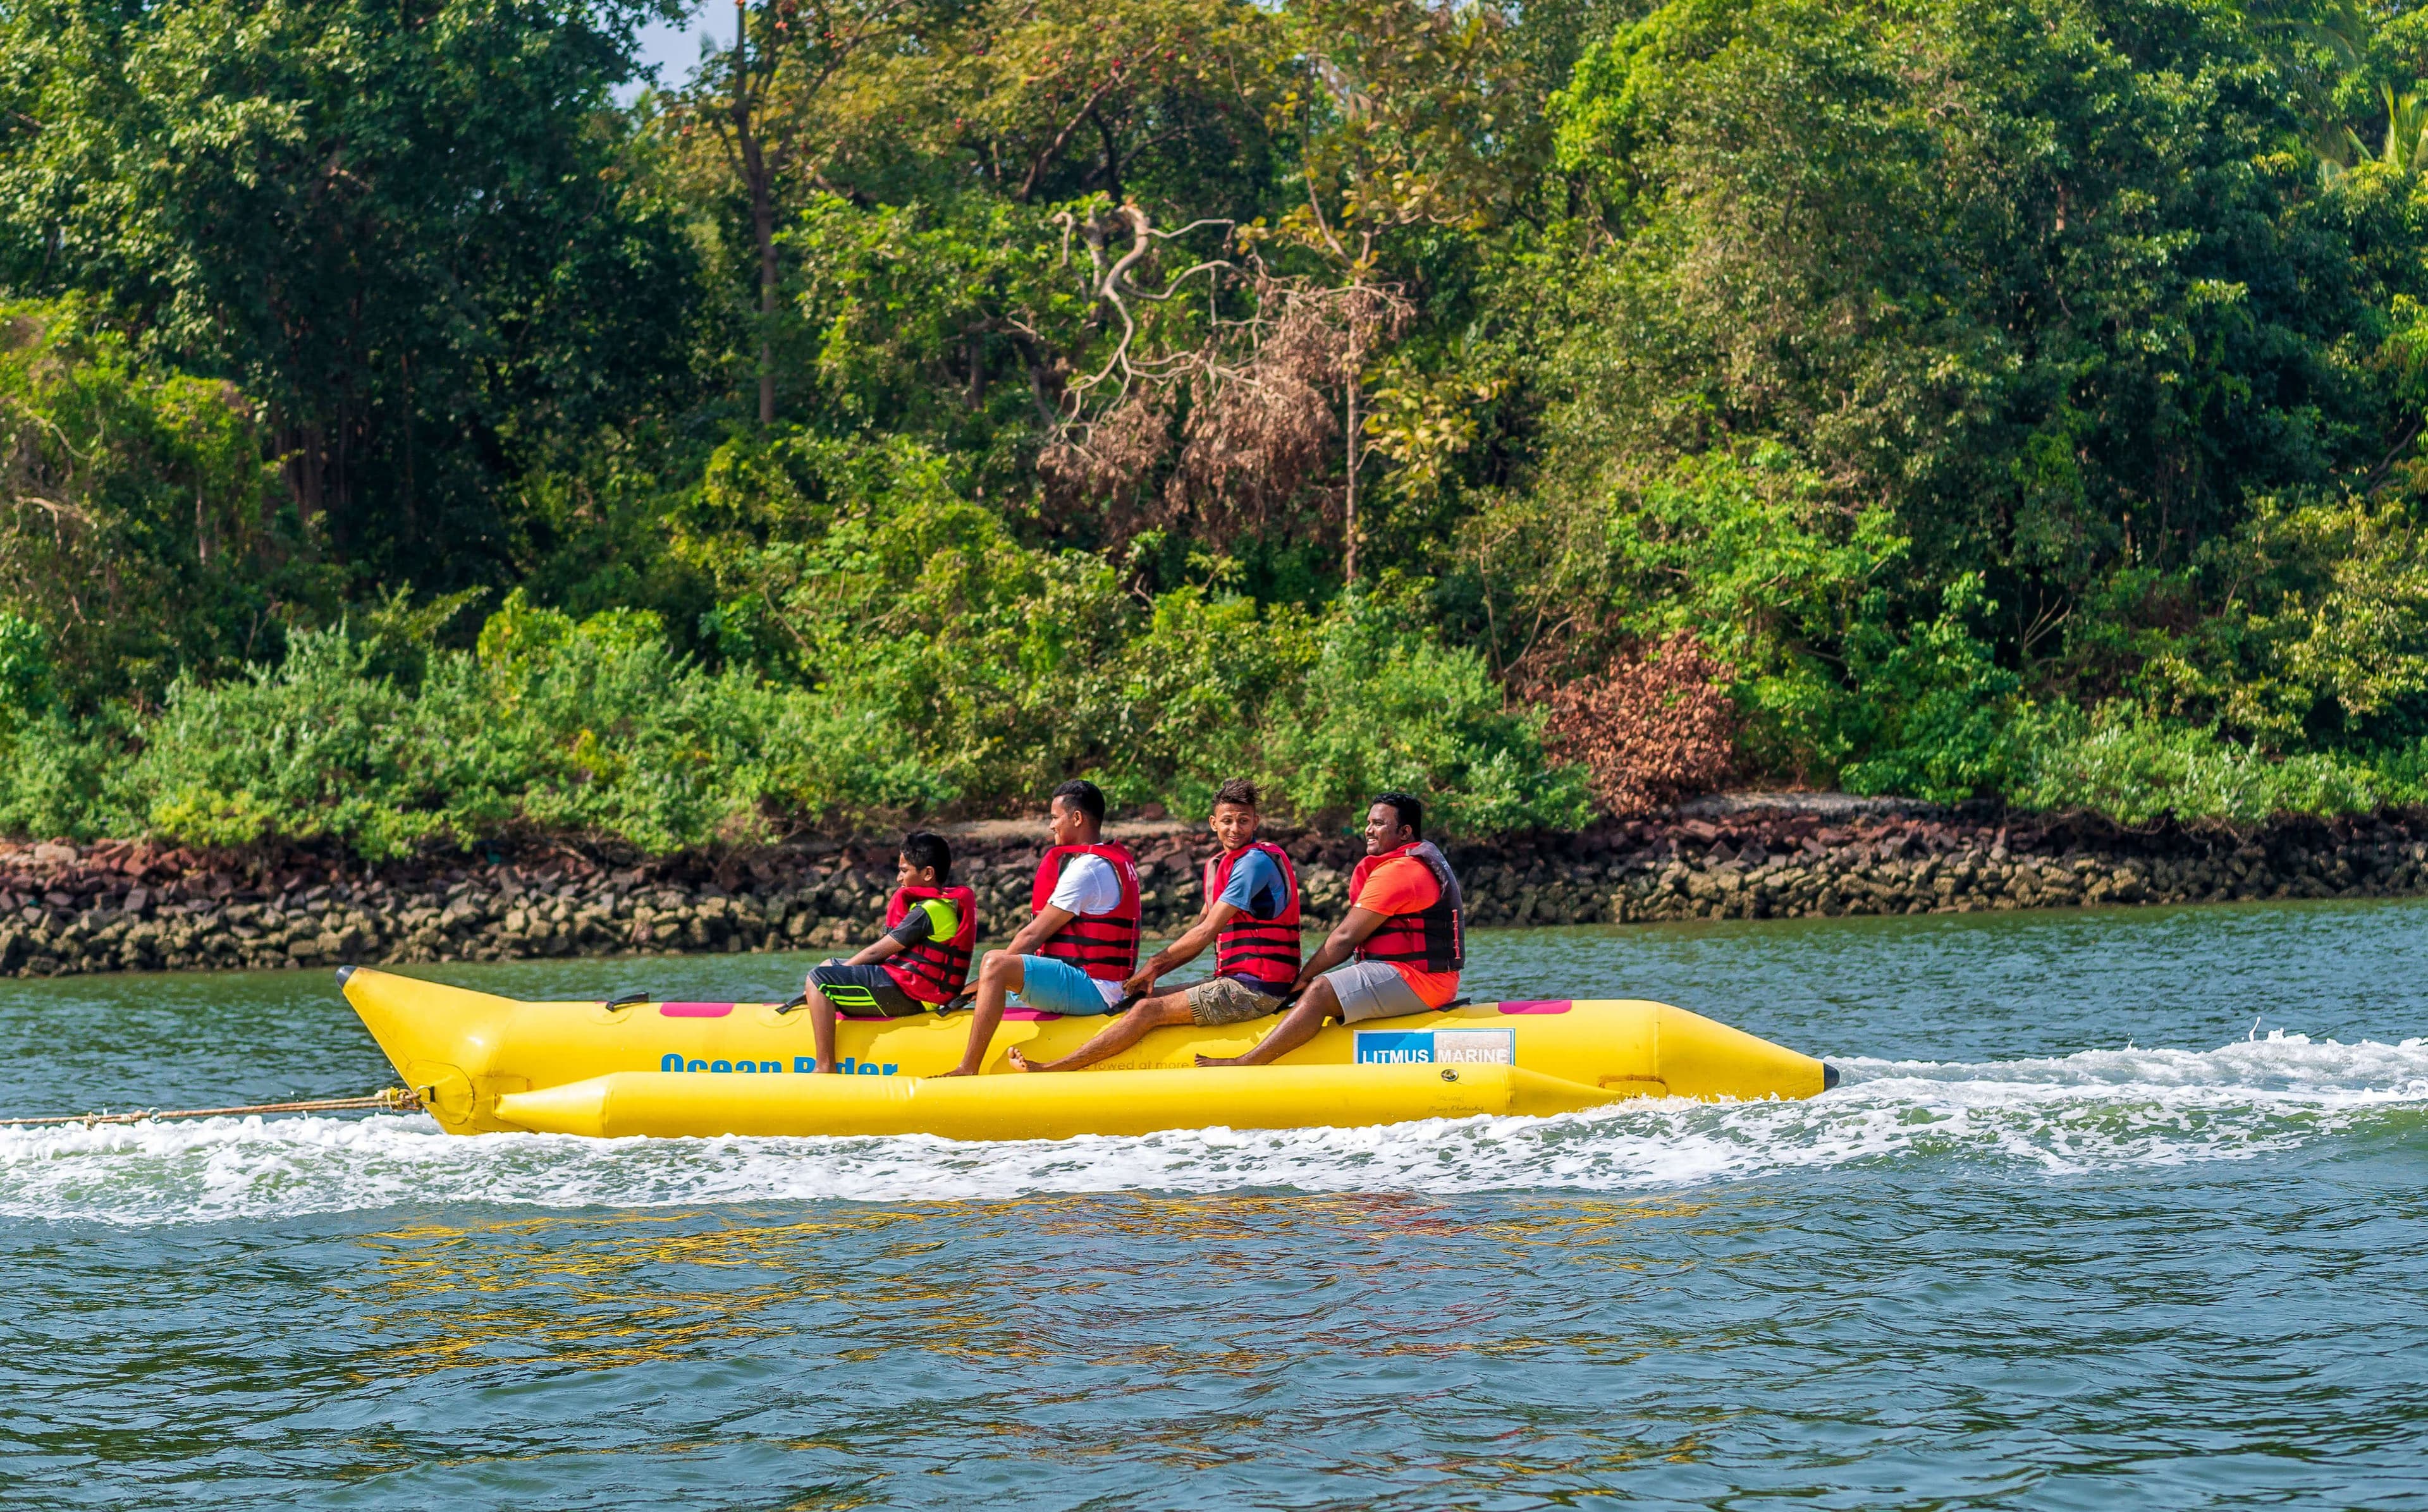 Четыре человека в банановой лодке наслаждаются природой в Бентоте, Шри-Ланка.